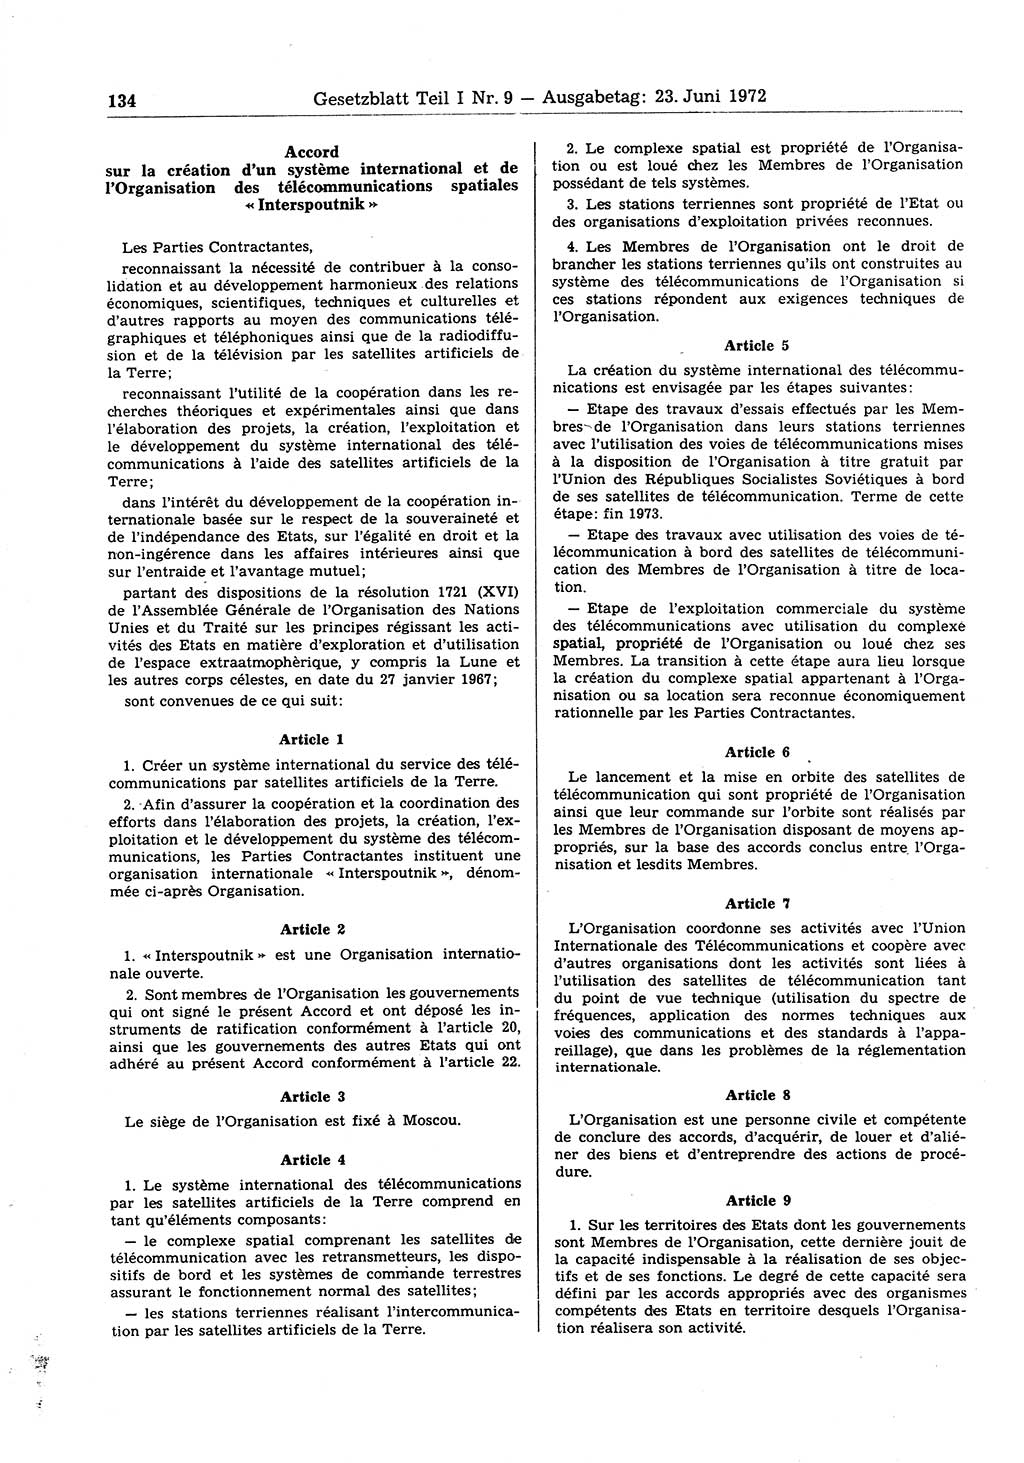 Gesetzblatt (GBl.) der Deutschen Demokratischen Republik (DDR) Teil Ⅰ 1972, Seite 134 (GBl. DDR Ⅰ 1972, S. 134)